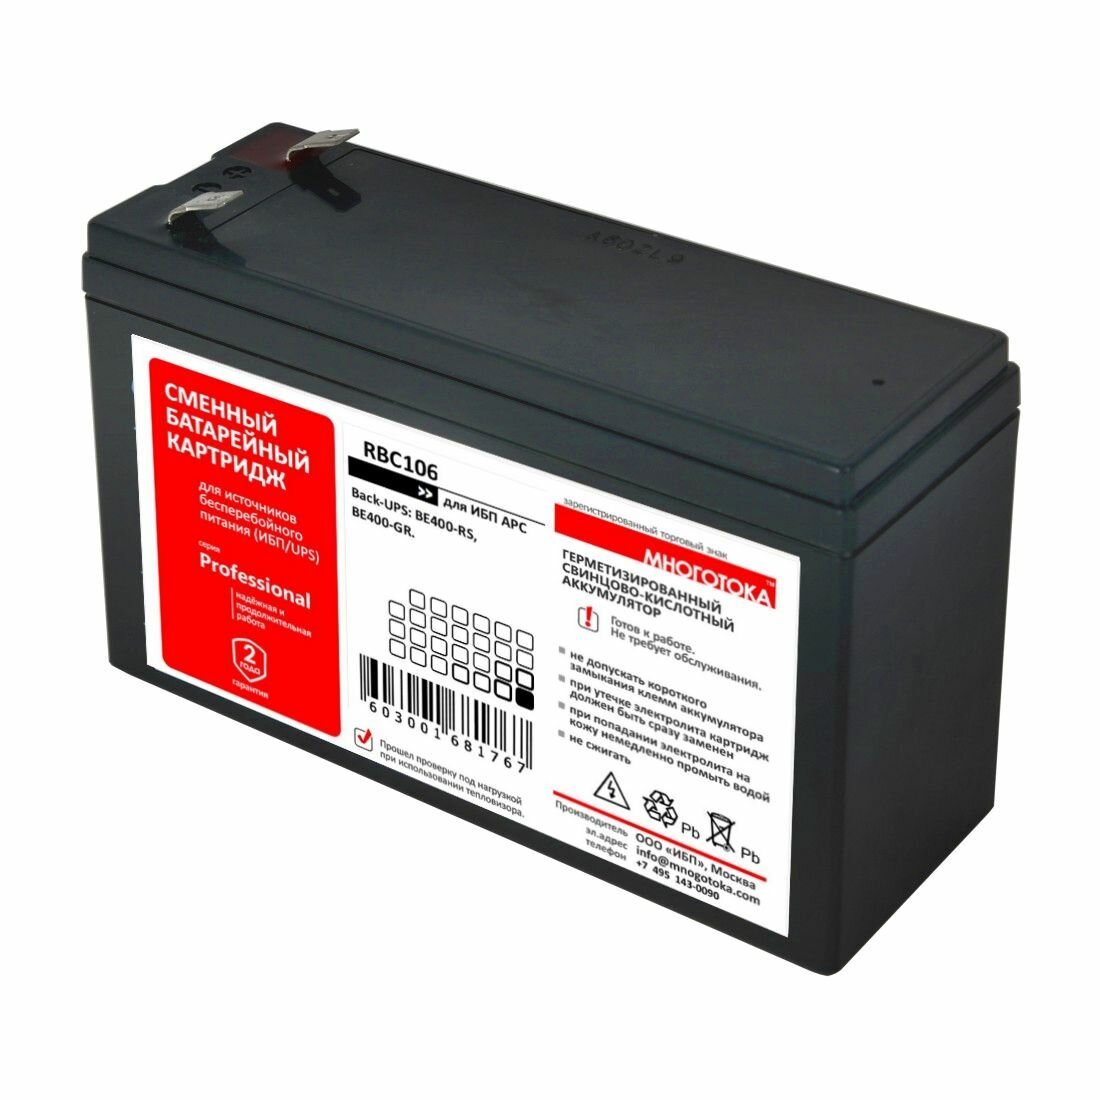 Многотока RBC106 Professional сменный батарейный картридж для ИБП APC